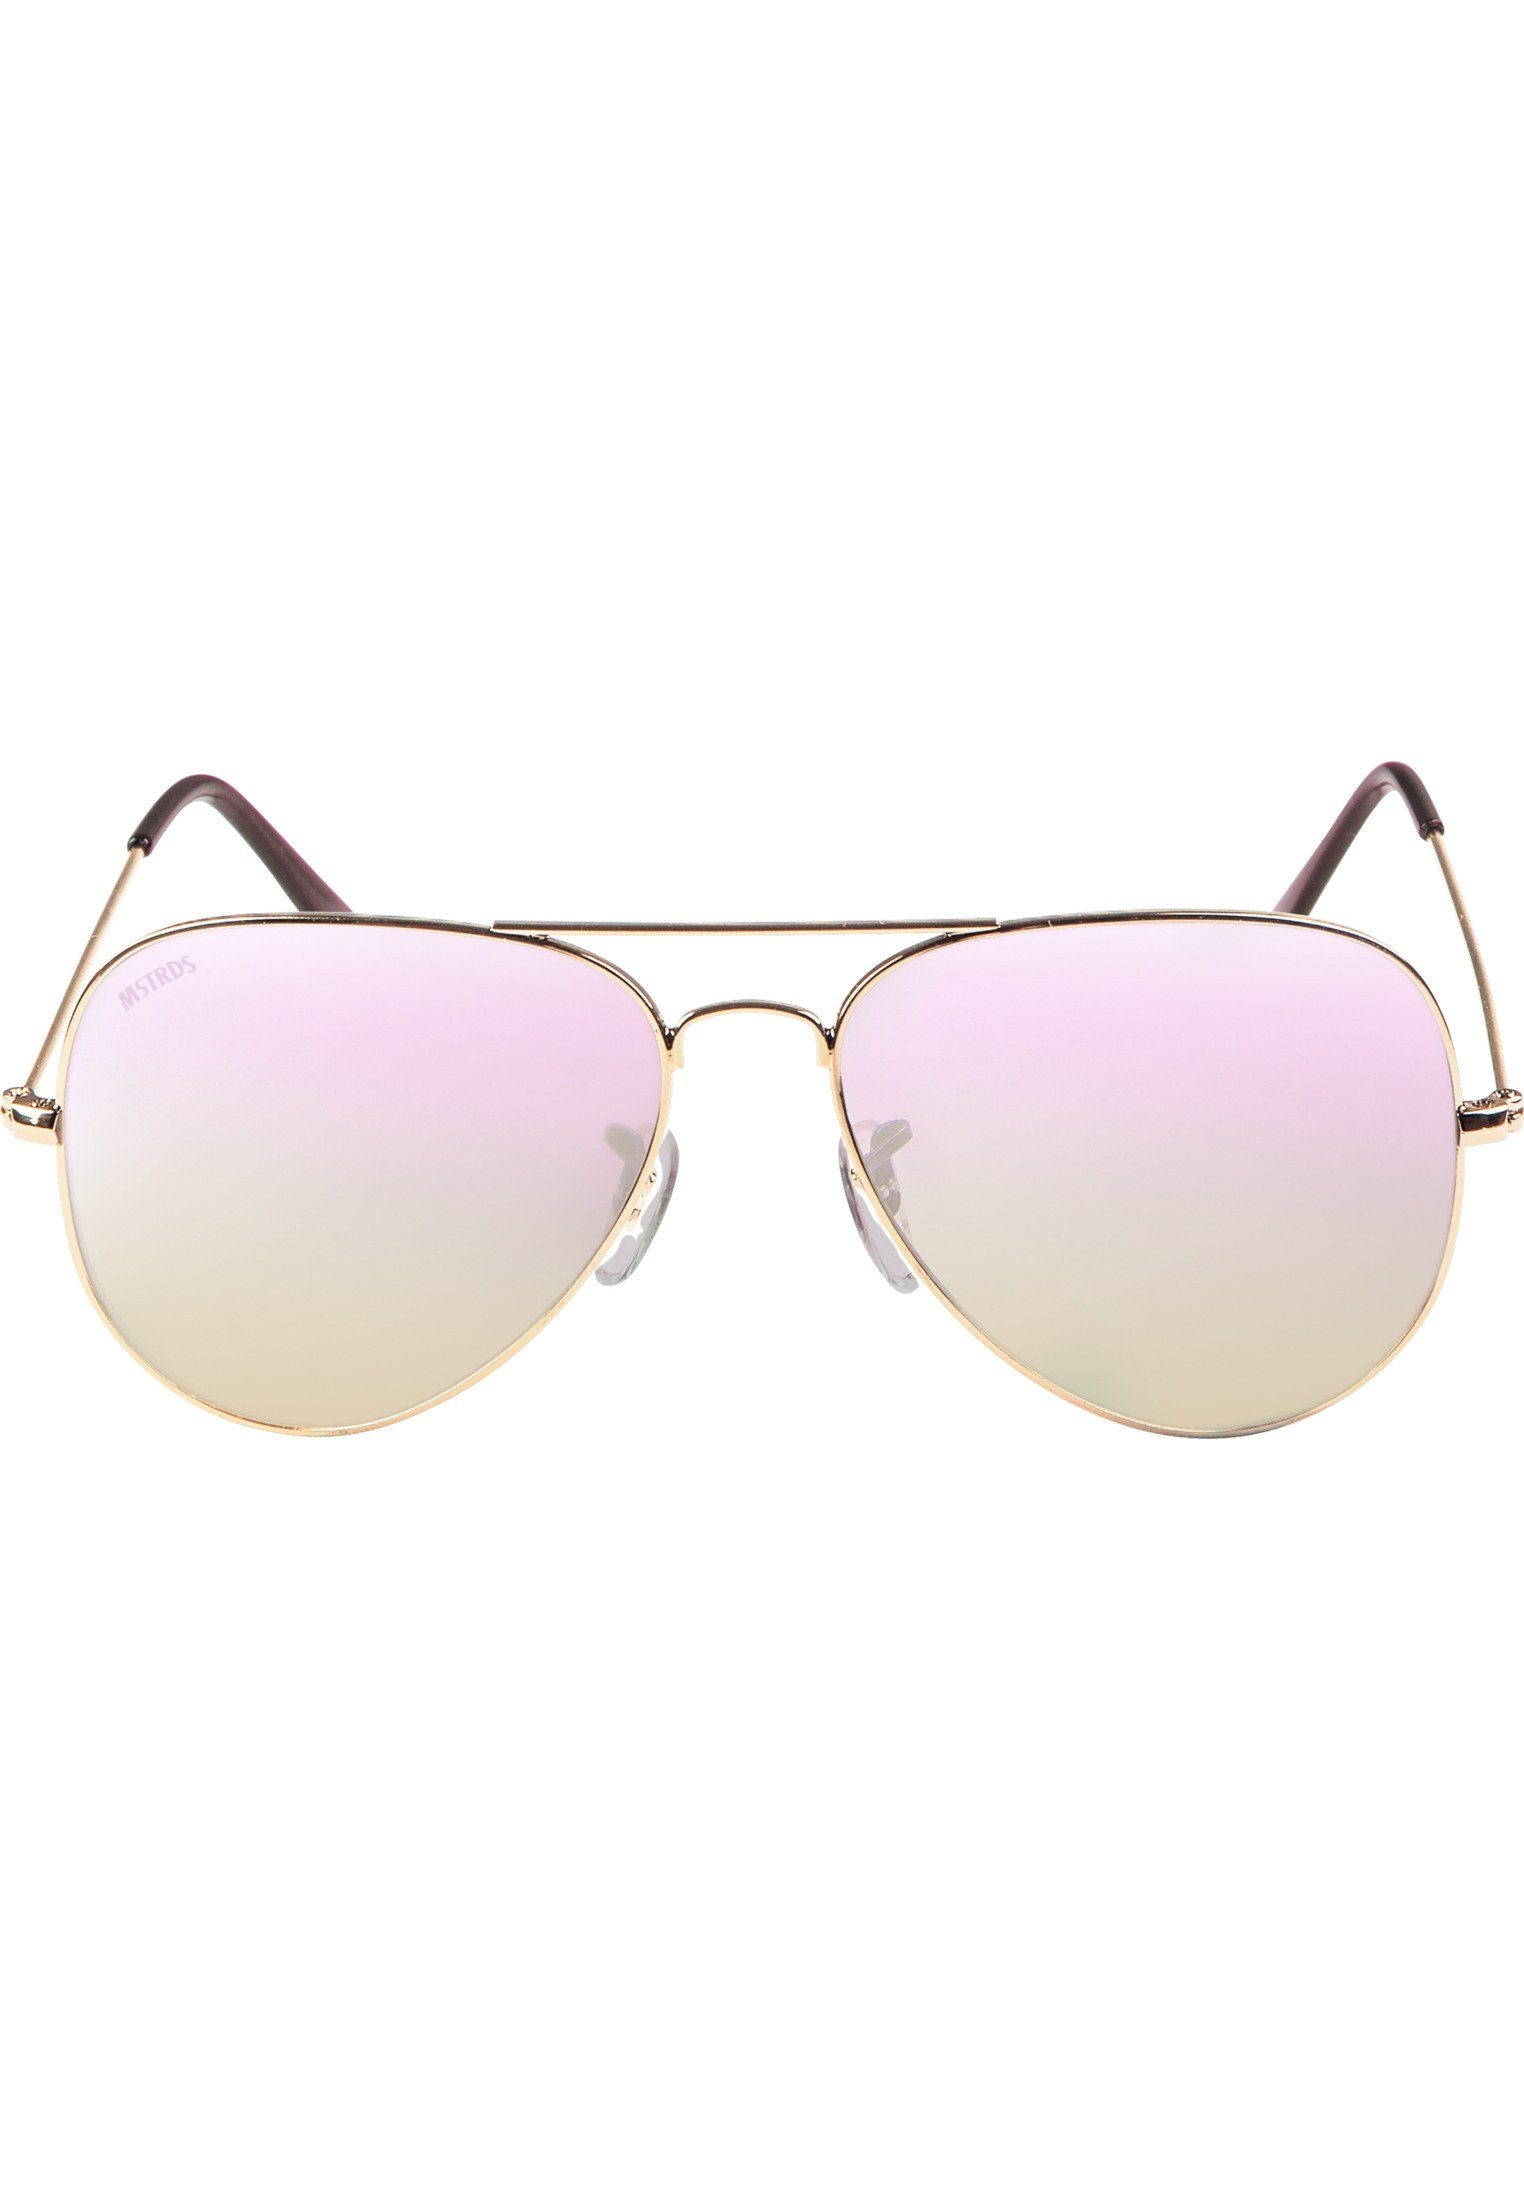 MSTRDS Sonnenbrille Accessoires Youth, Sport Freien Sunglasses auch im für geeignet Ideal PureAv